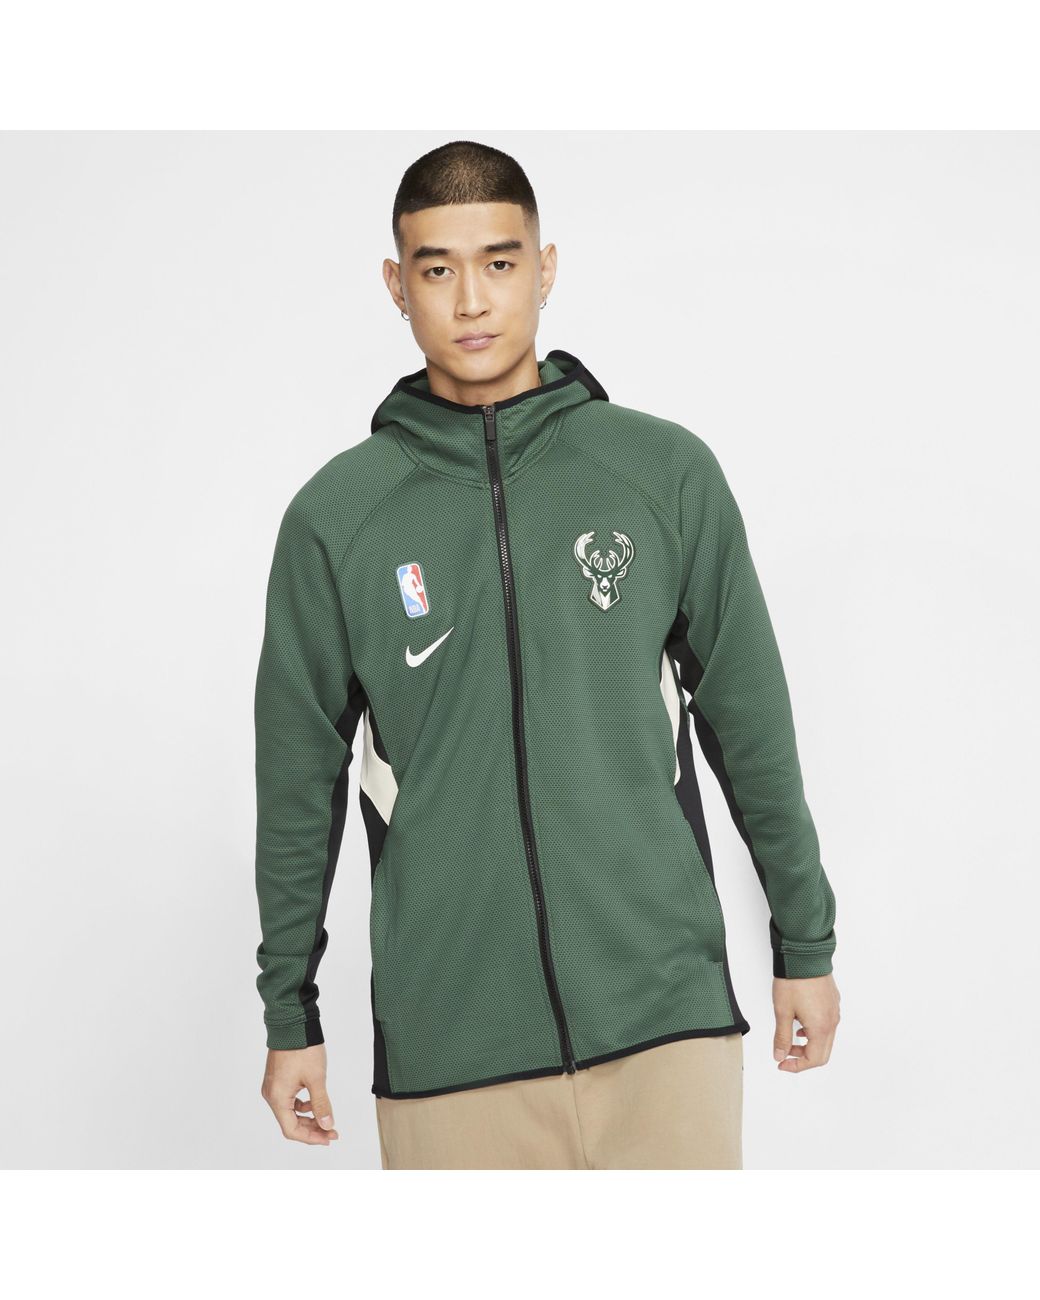 Nike Therma Flex Boston Celtics Authentic Warm-Up Jacket